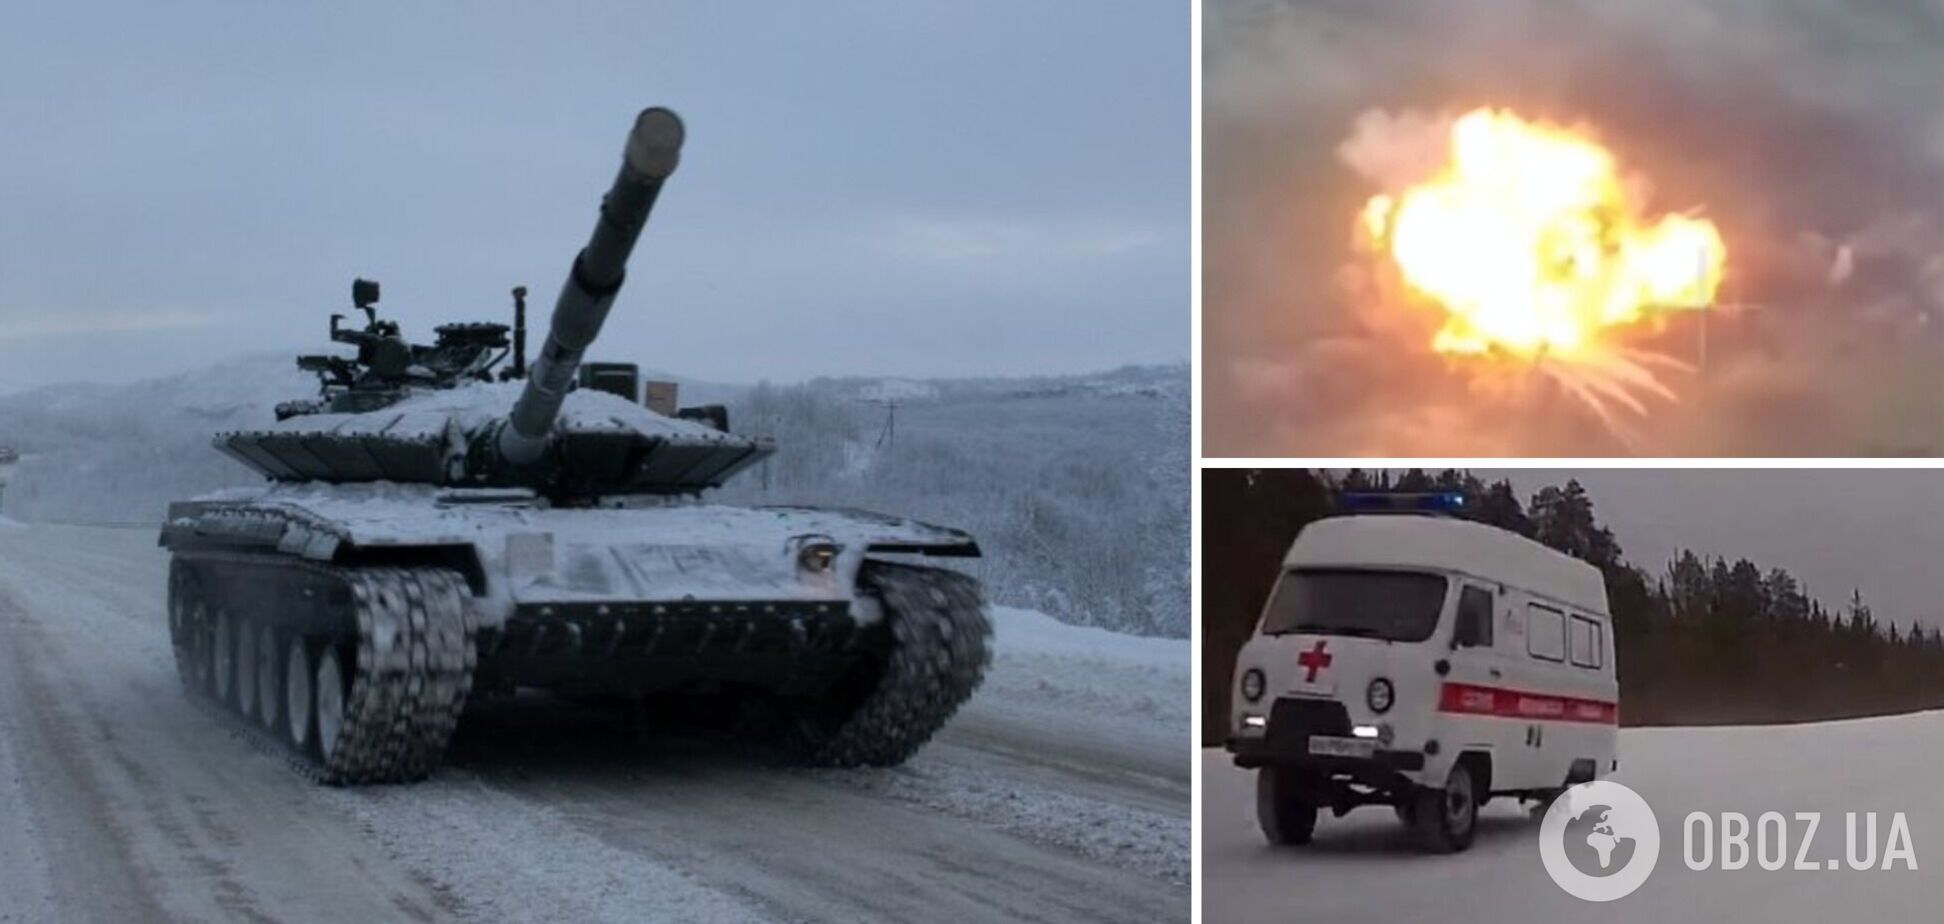 Самоликвидация удалась: в Белгородской области российский танк подорвался на мине, есть погибший